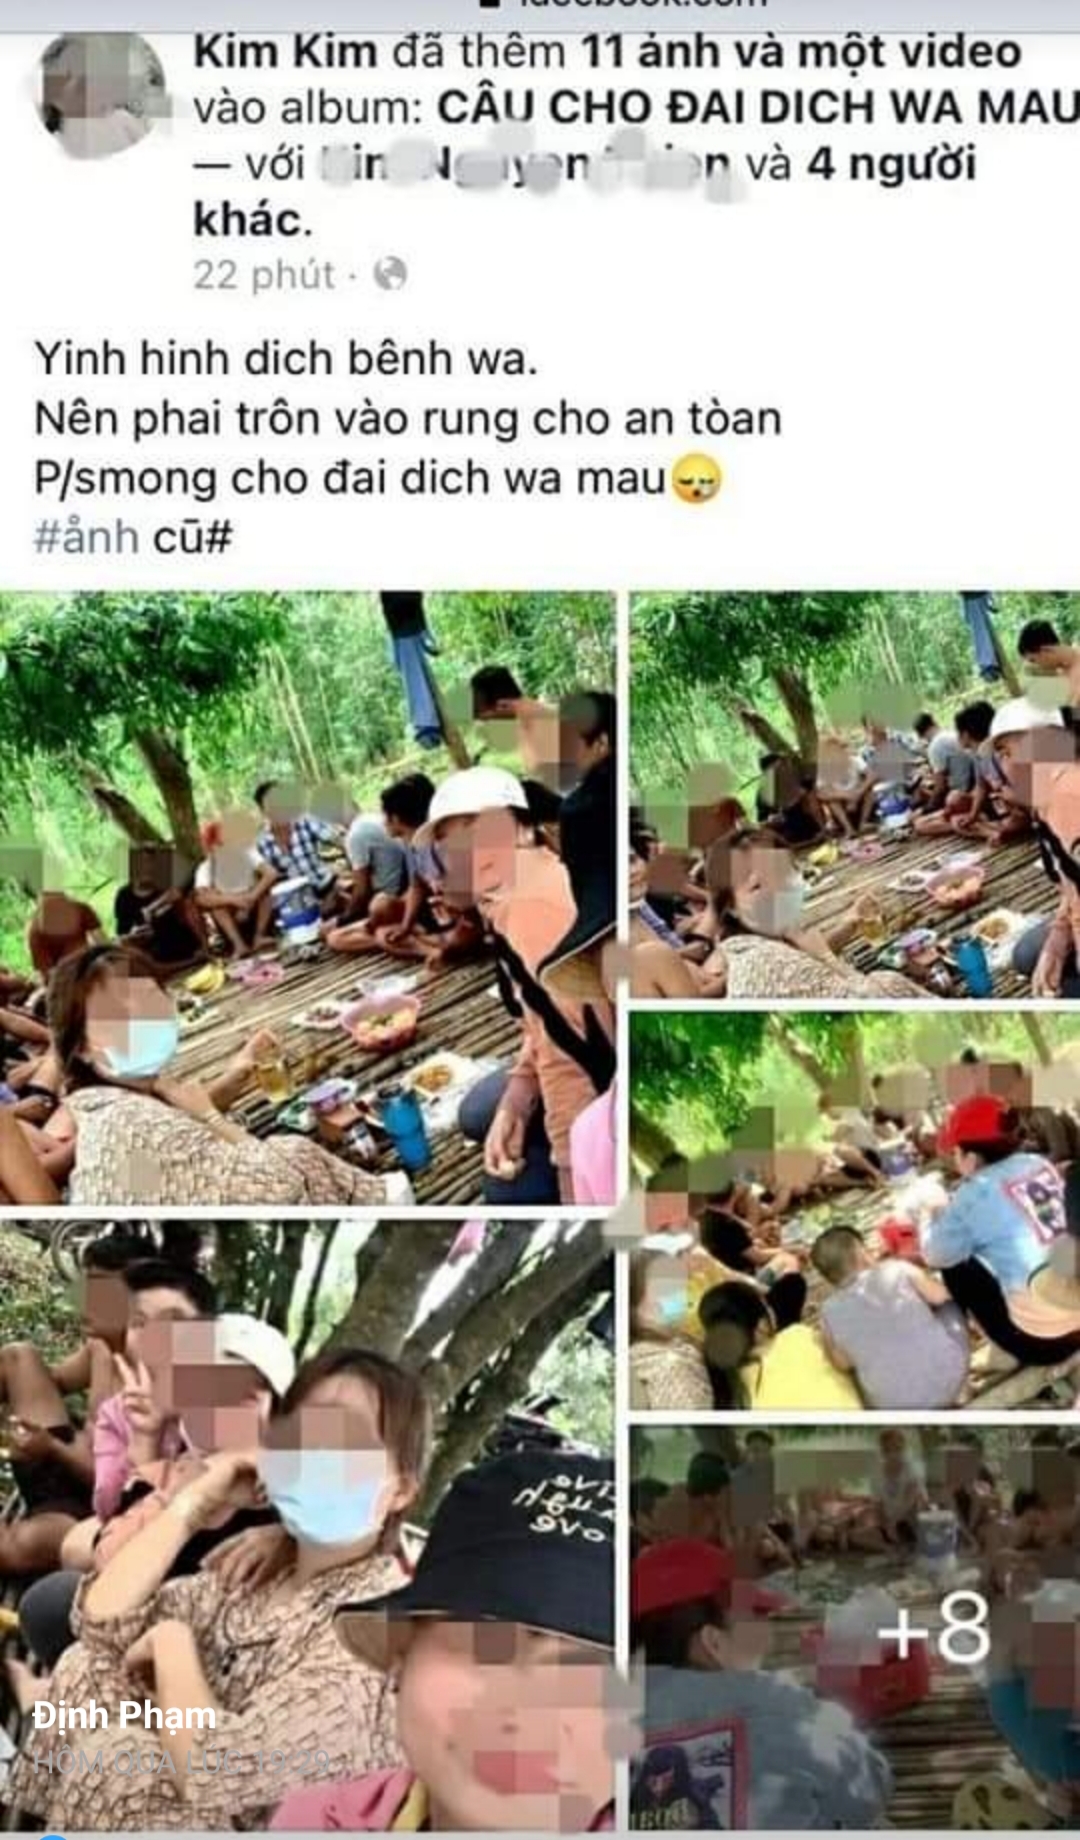 21 nam, nữ vào rừng nhậu rồi “khoe” trên Facebook, bị phạt 210 triệu đồng - Ảnh 1.